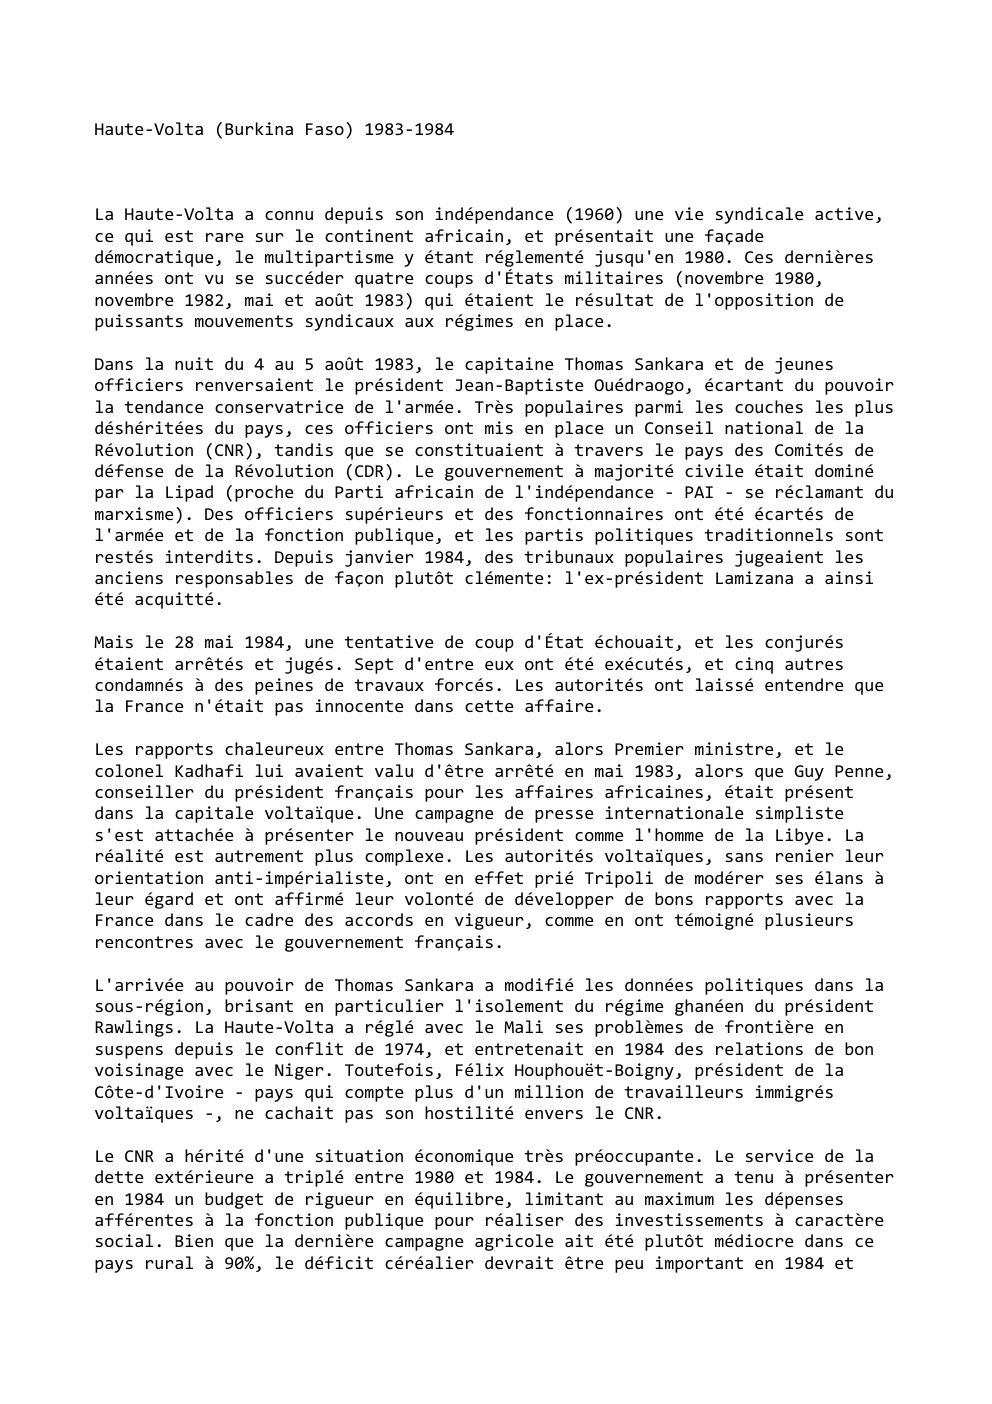 Prévisualisation du document Haute-Volta (Burkina Faso) 1983-1984

La Haute-Volta a connu depuis son indépendance (1960) une vie syndicale active,
ce qui est rare...